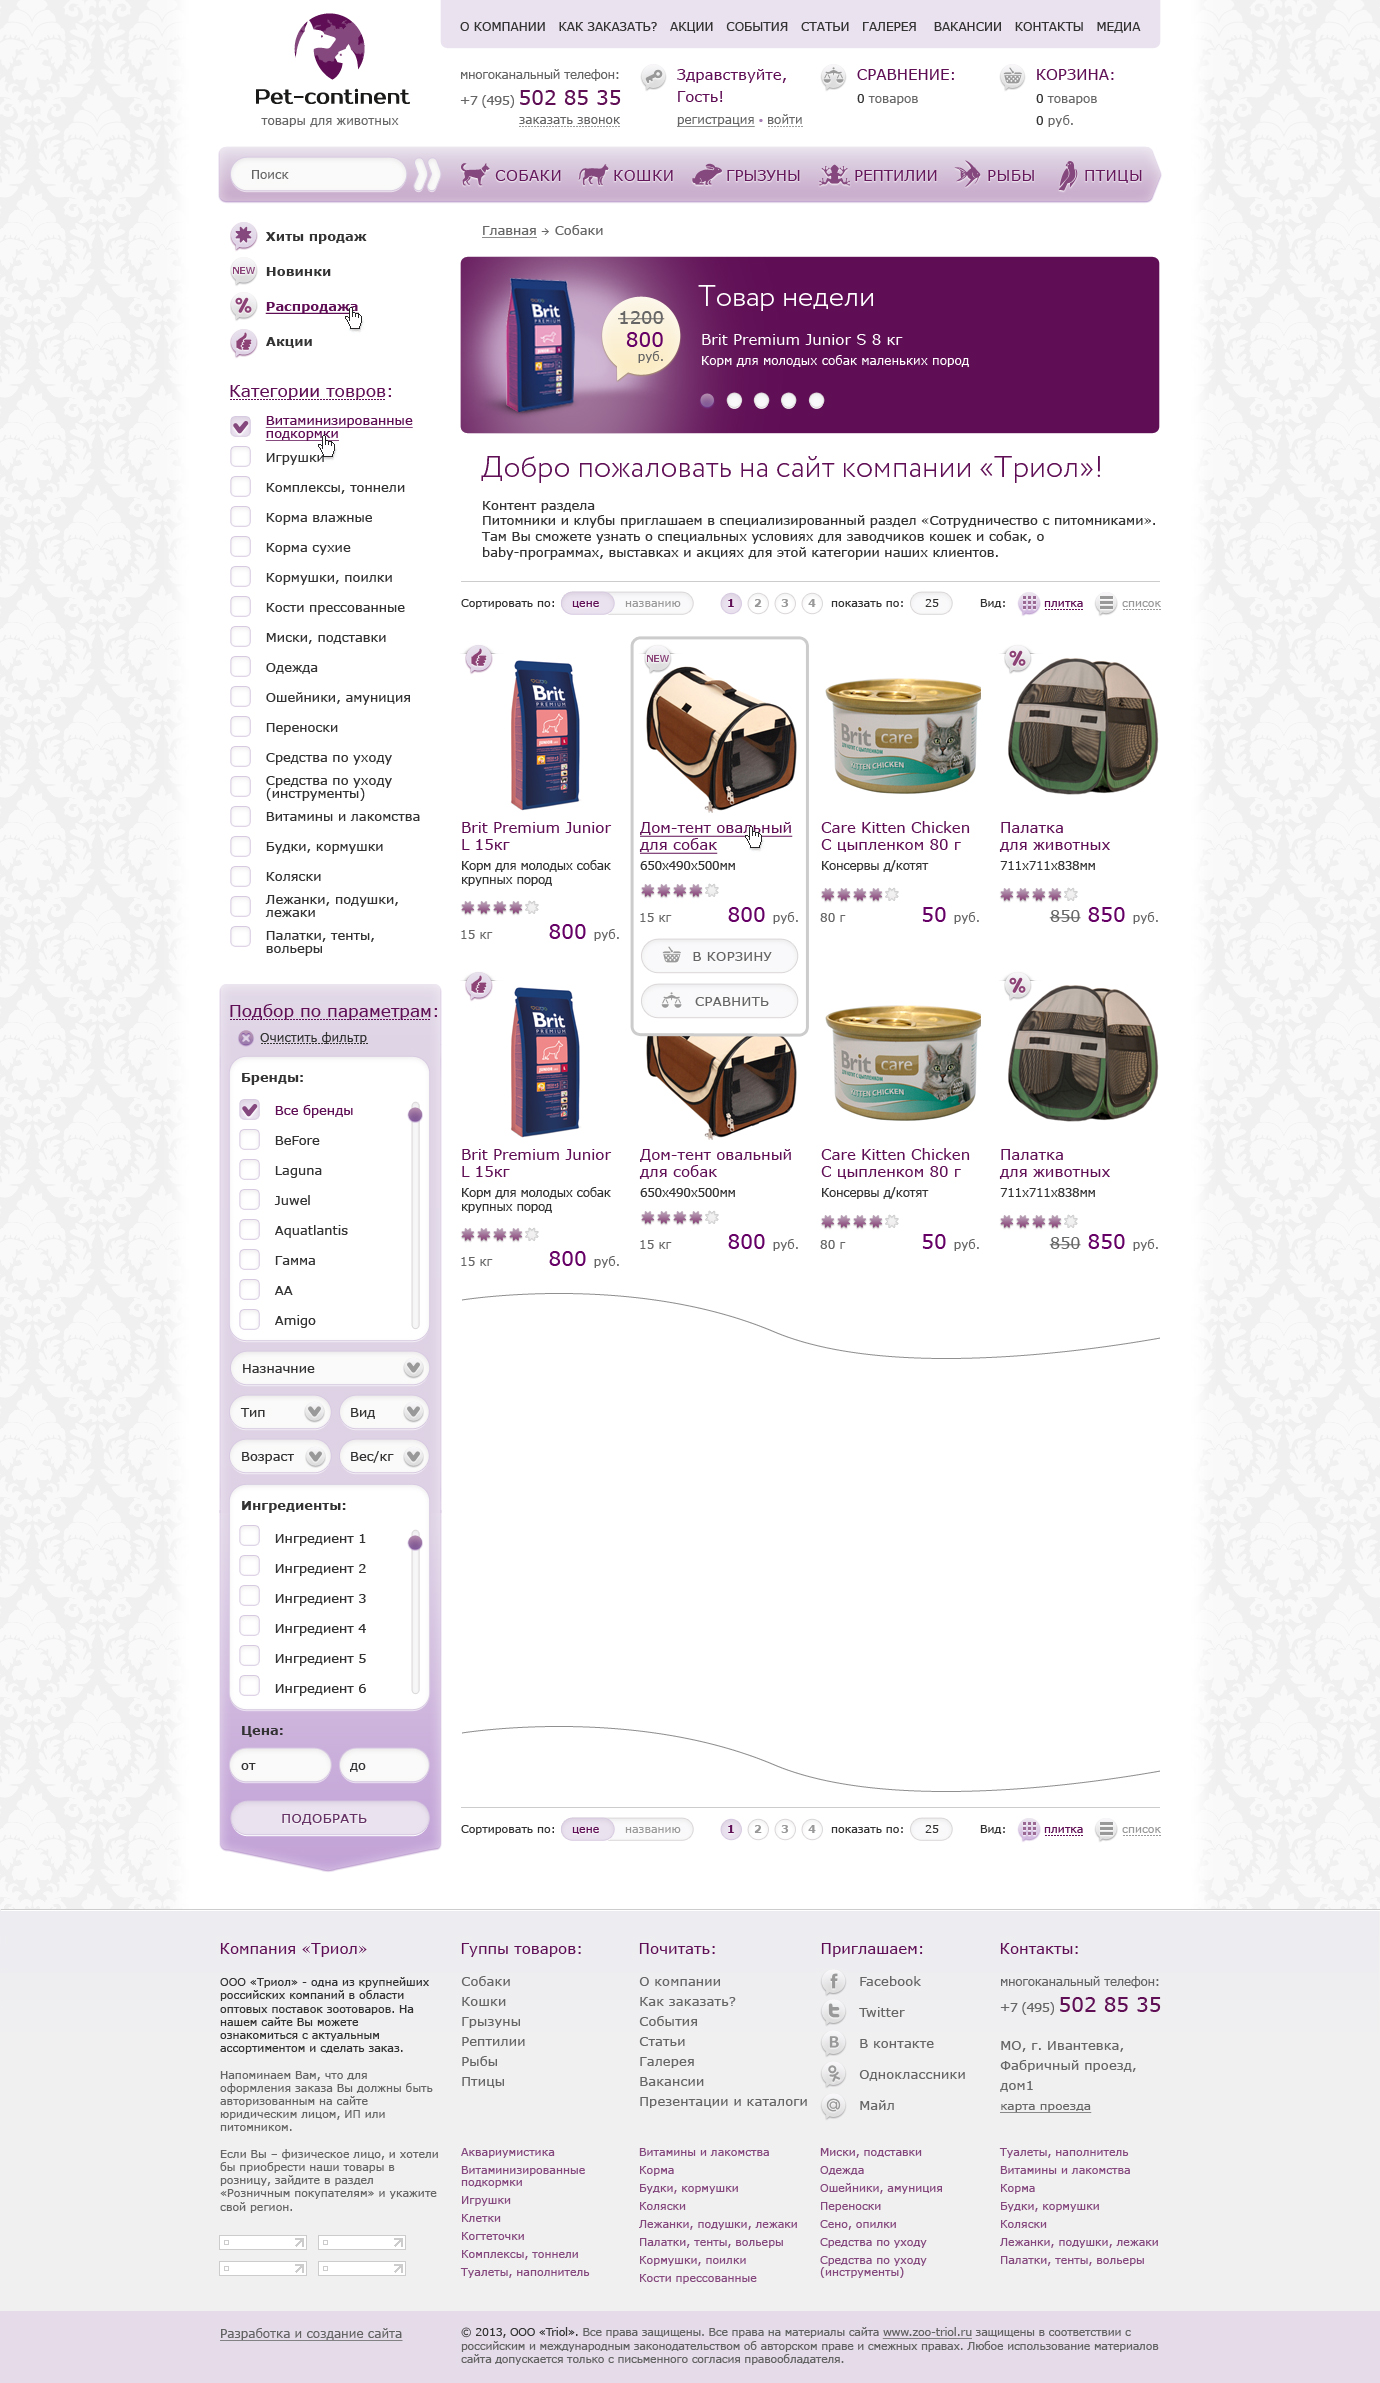 Дизайн интернет-магазина «Pet-continent» магазин товаров для животных - Страница каталога с фильтром (вид картами)